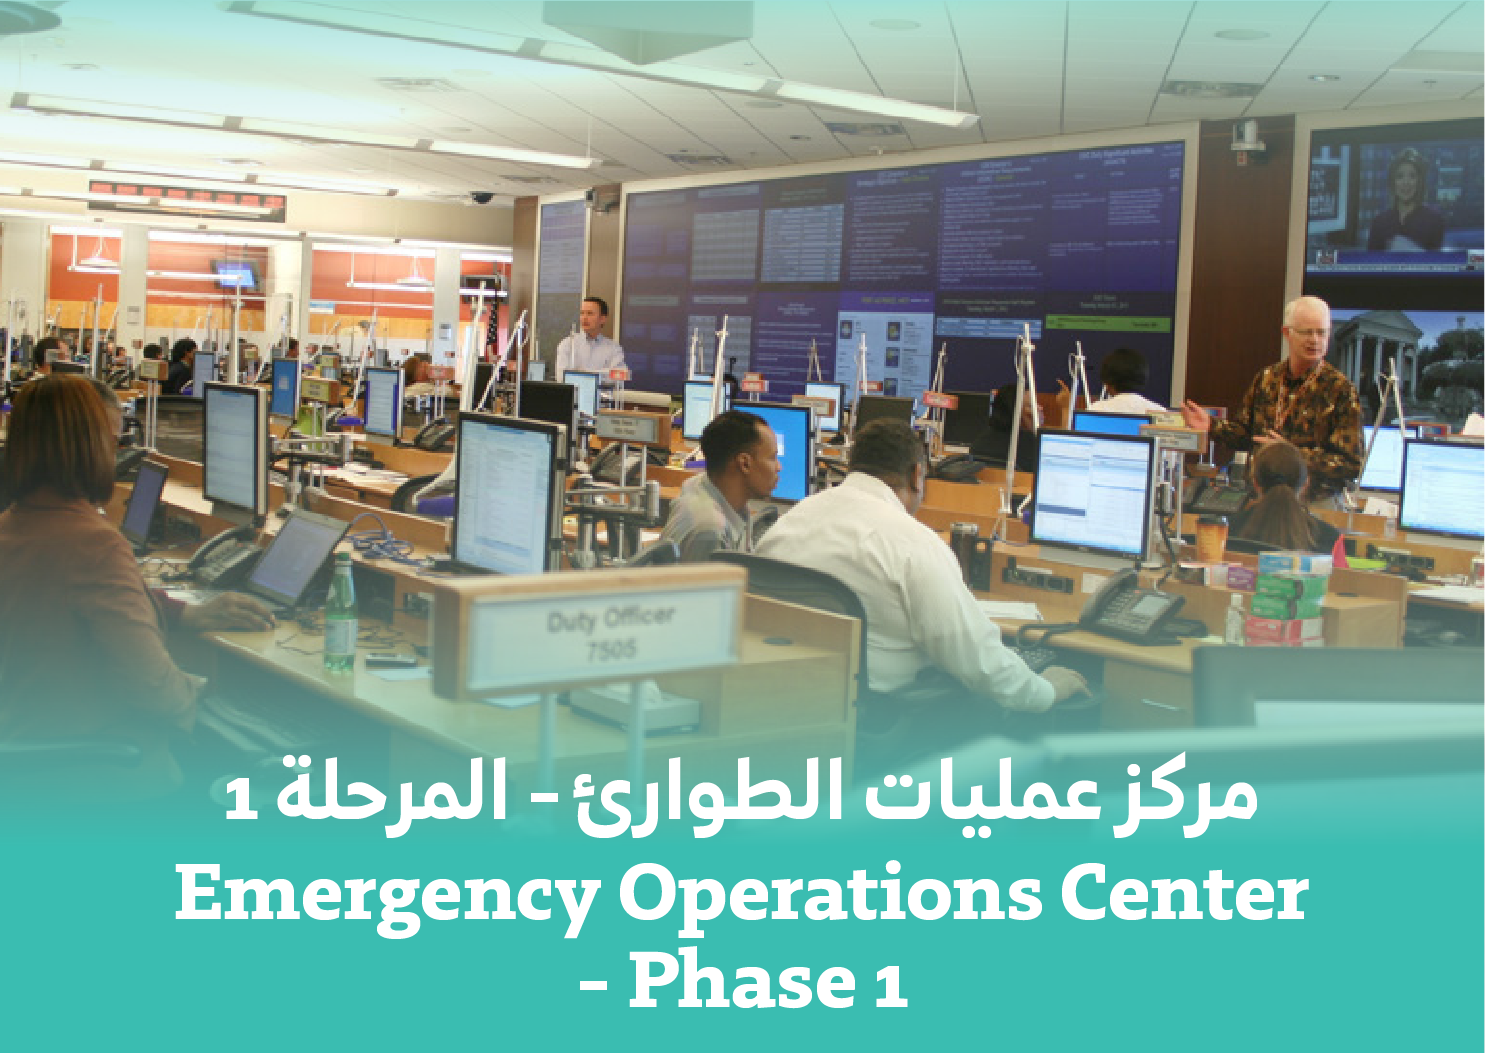 Emergency Operation Center - Phase 1